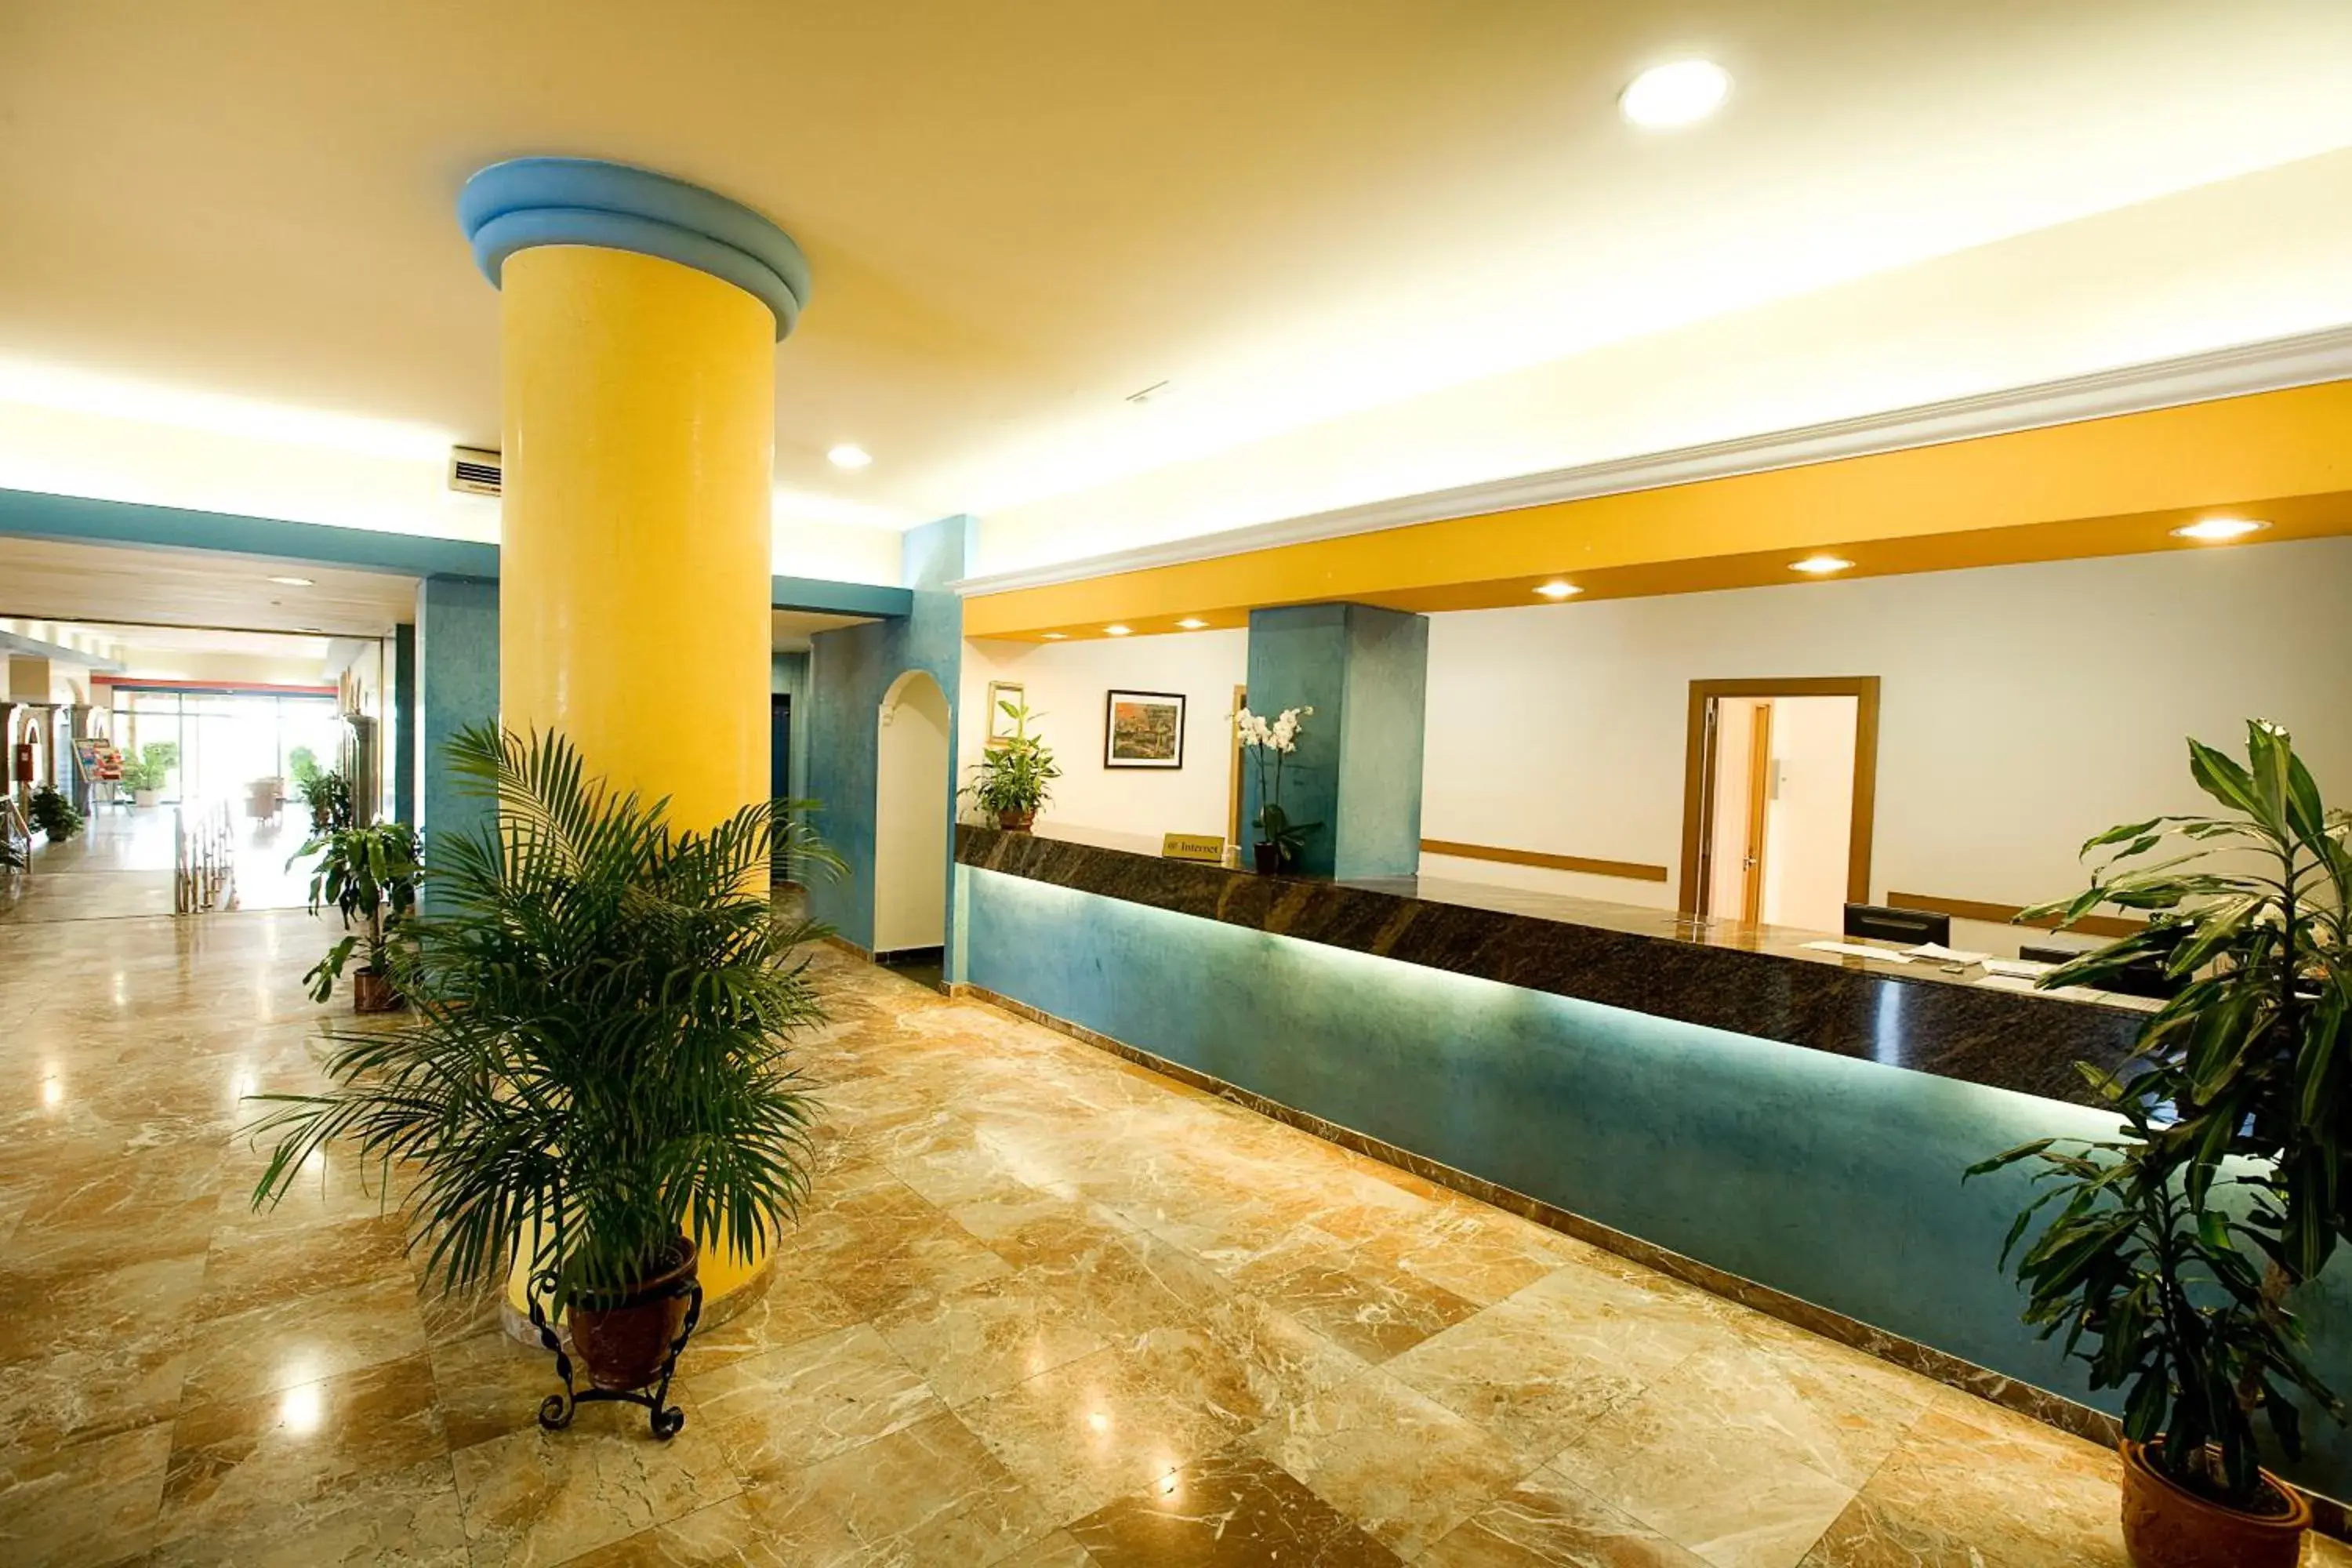 Lobby or reception, Lobby/Reception in Hotel Monarque Torreblanca